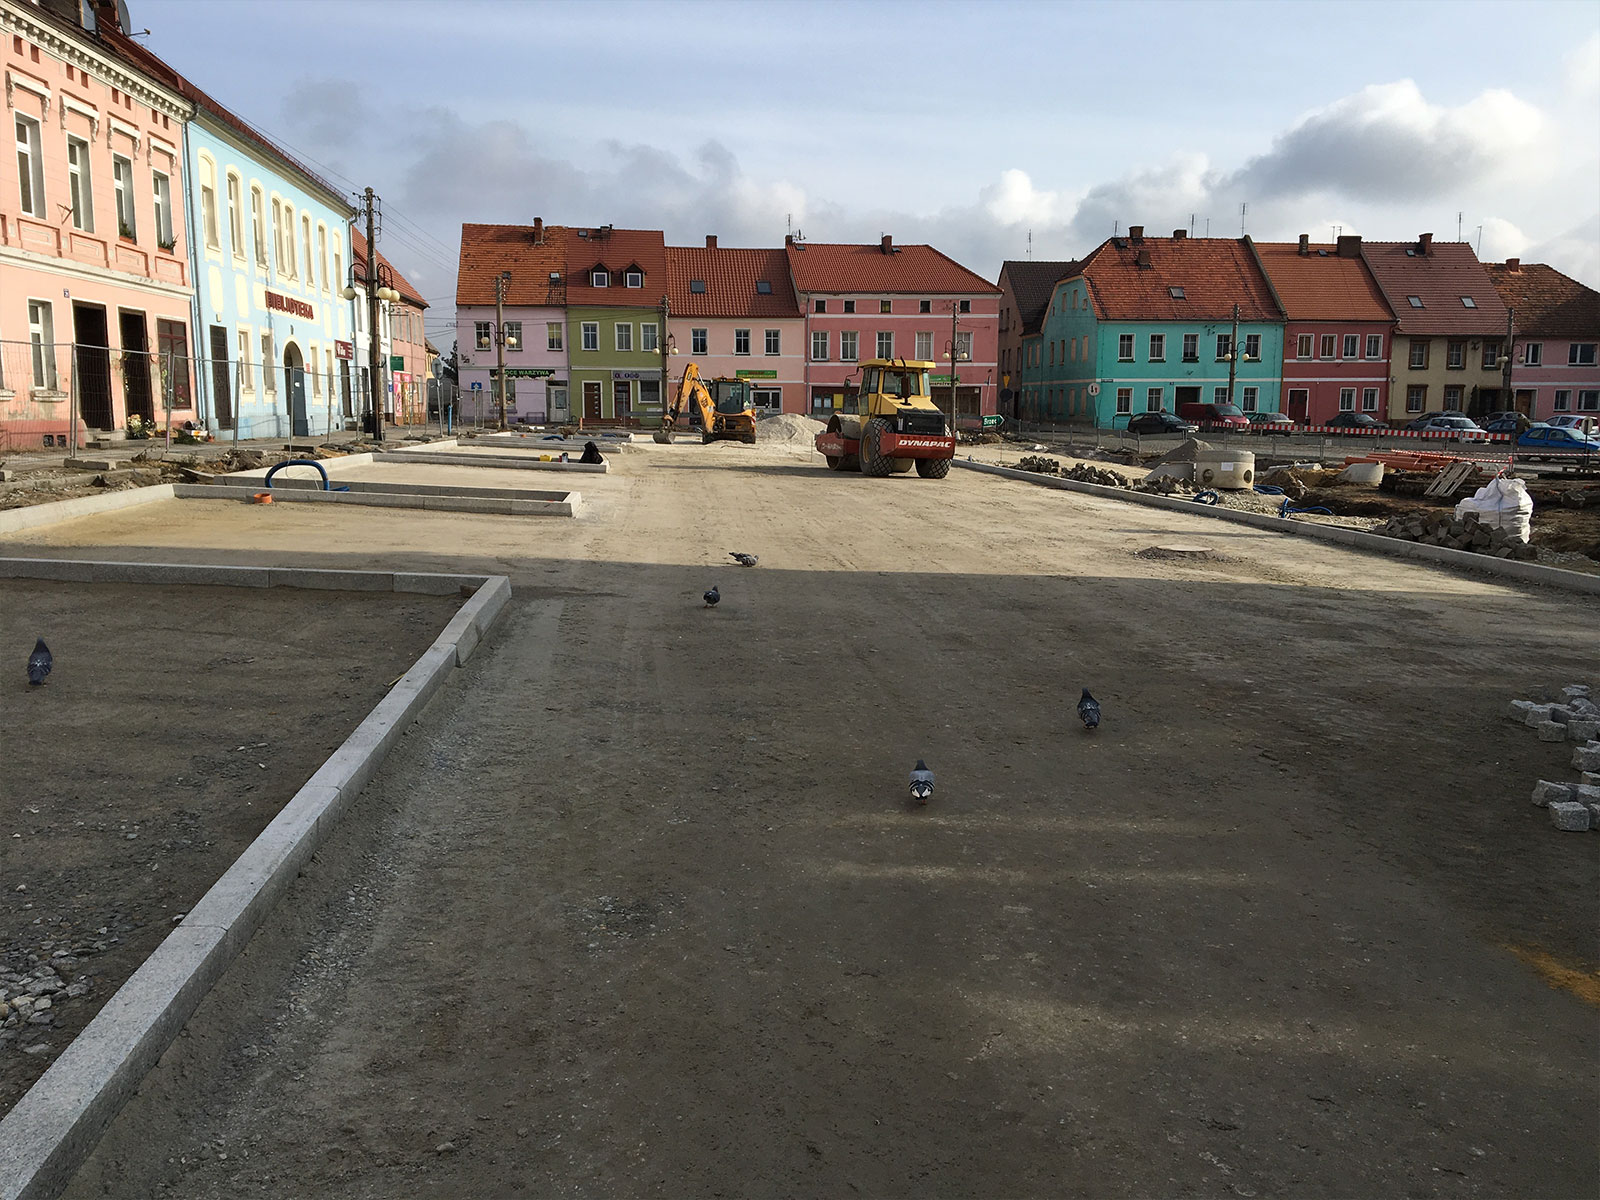 Town square – Plac Wolności in Wiązów